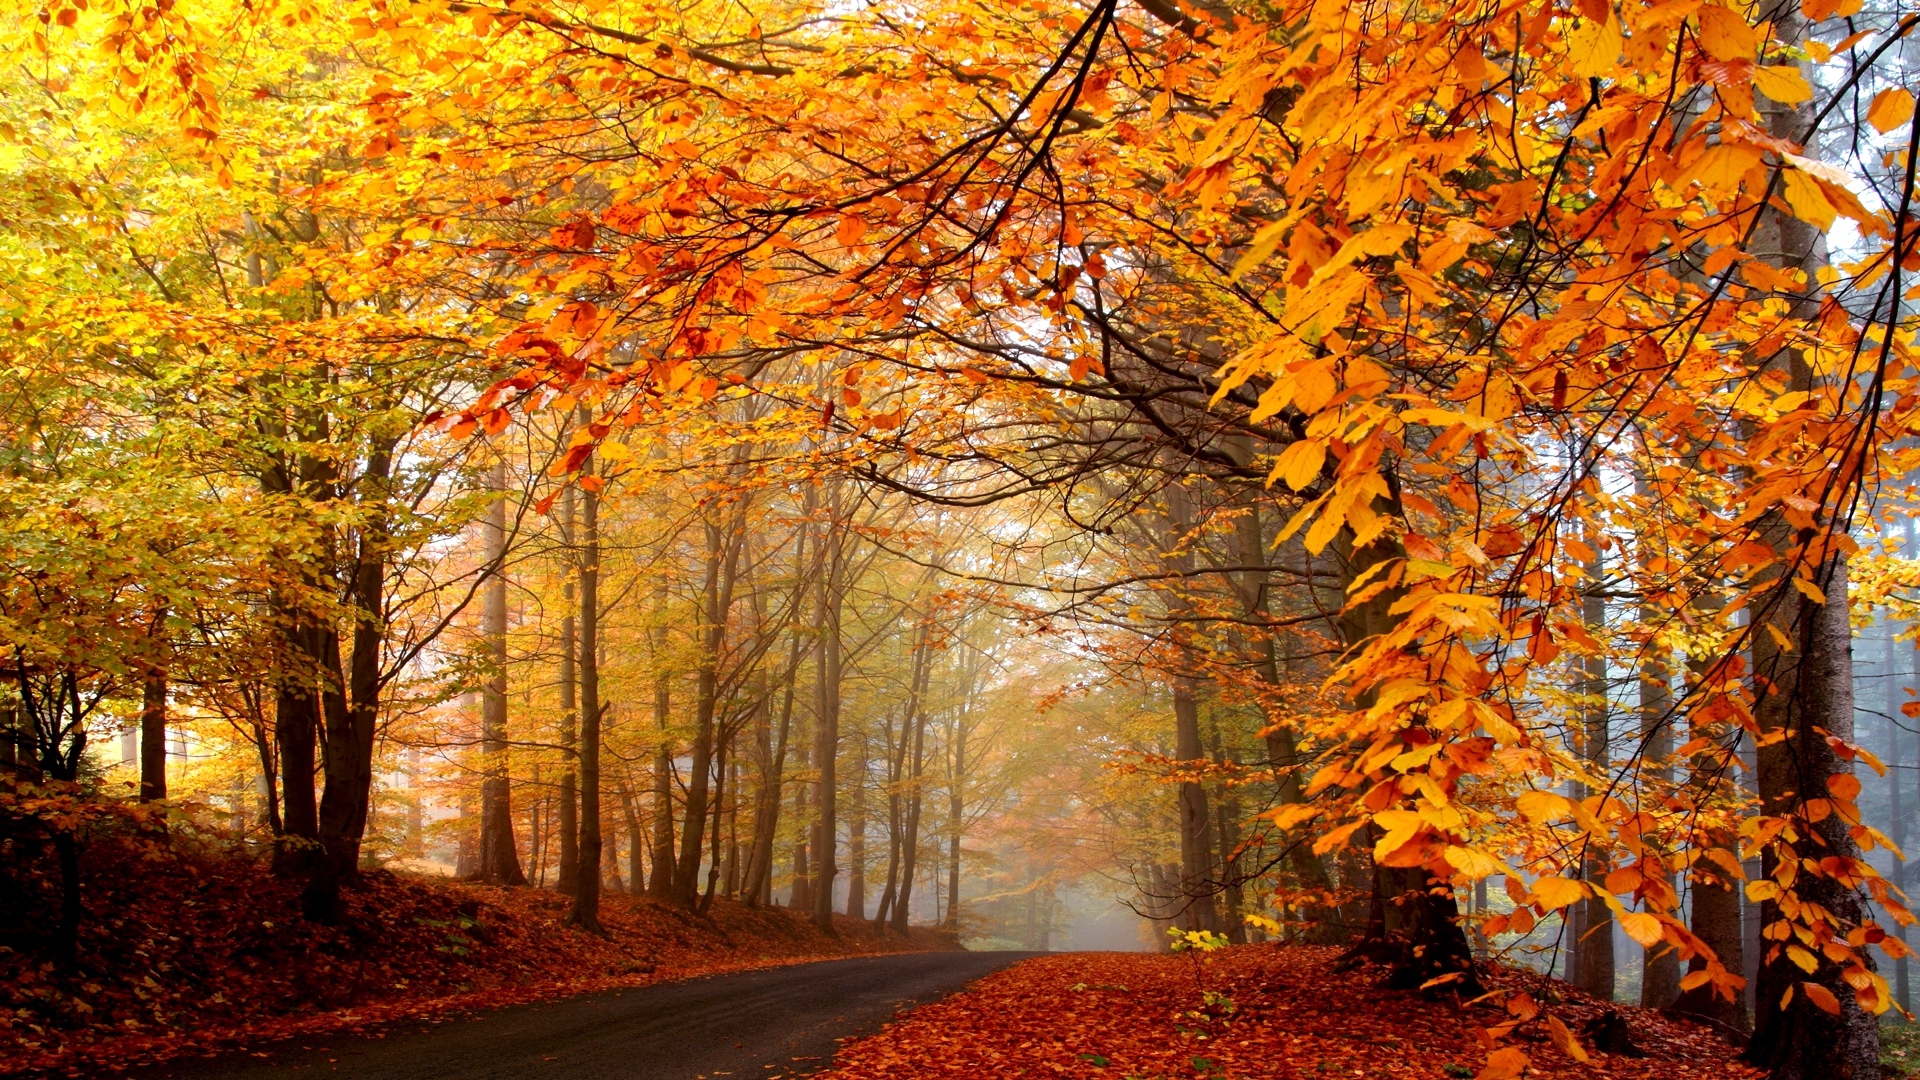 Download wallpaper 1920x1080 autumn, trees, road, fog, haze